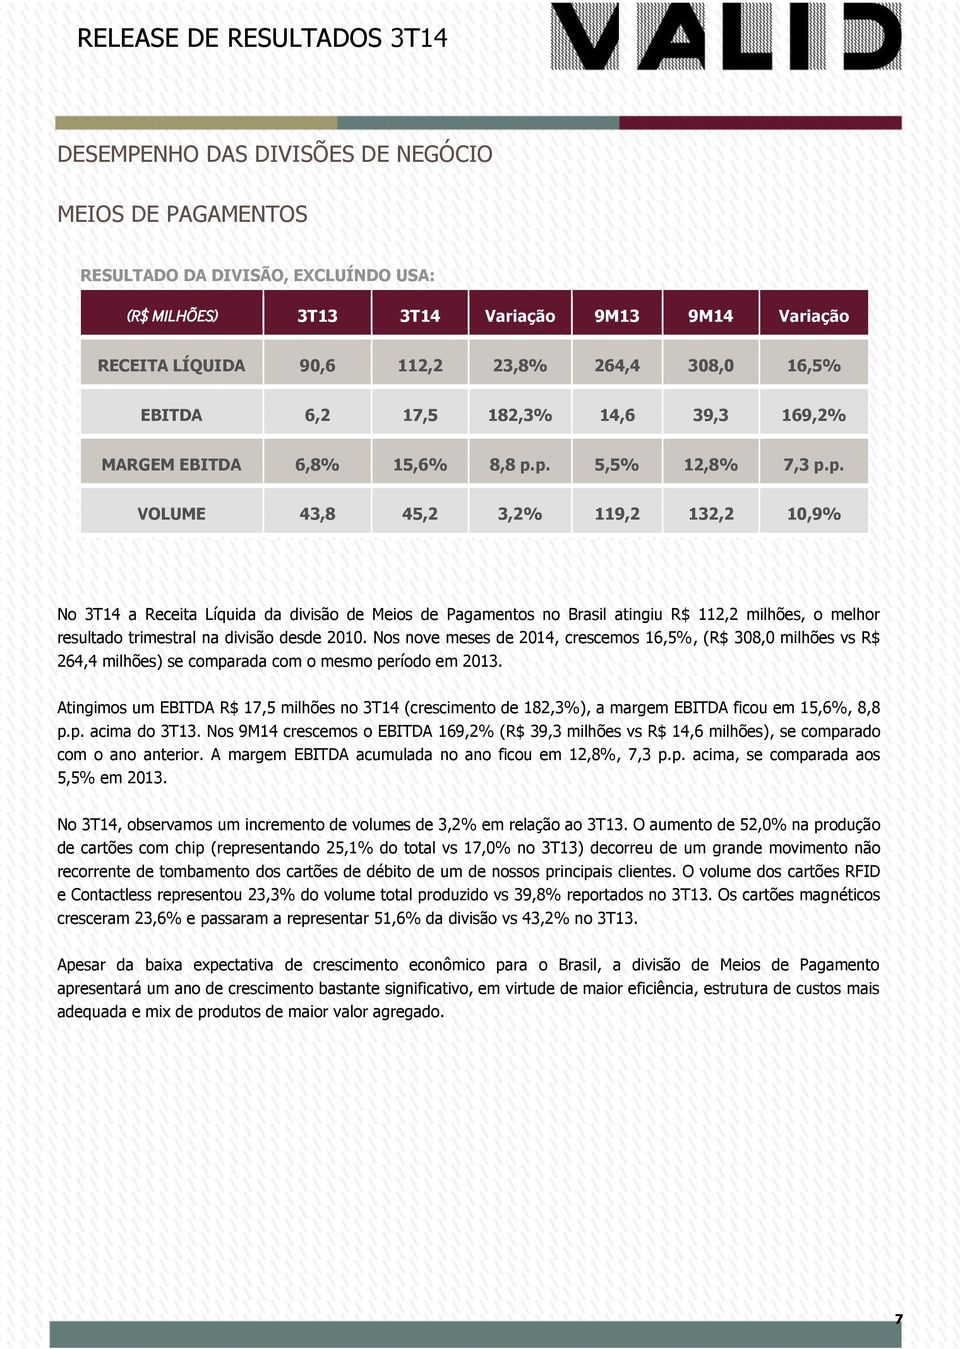 p. 5,5% 12,8% 7,3 p.p. VOLUME 43,8 45,2 3,2% 119,2 132,2 10,9% No 3T14 a Receita Líquida da divisão de Meios de Pagamentos no Brasil atingiu R$ 112,2 milhões, o melhor resultado trimestral na divisão desde 2010.